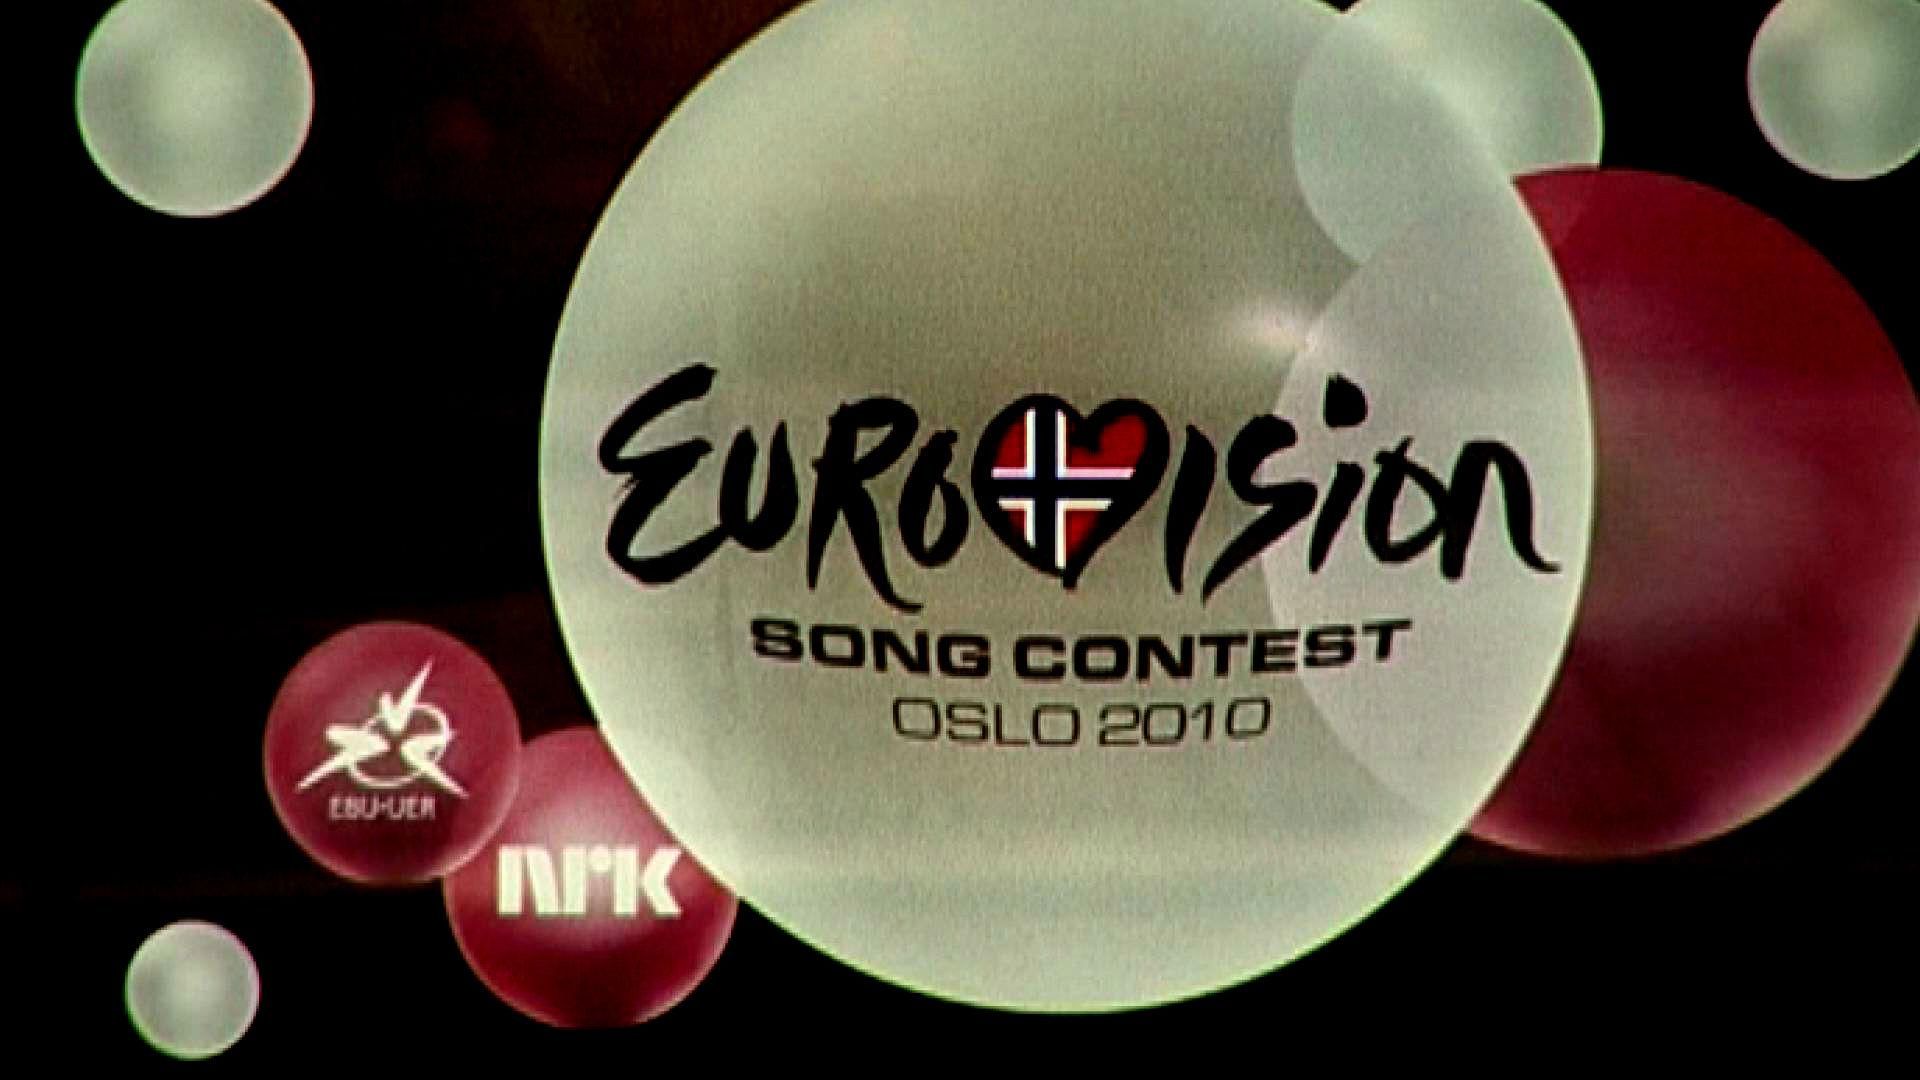 Євробачення: від першого конкурсу 1956 року по сьогодні